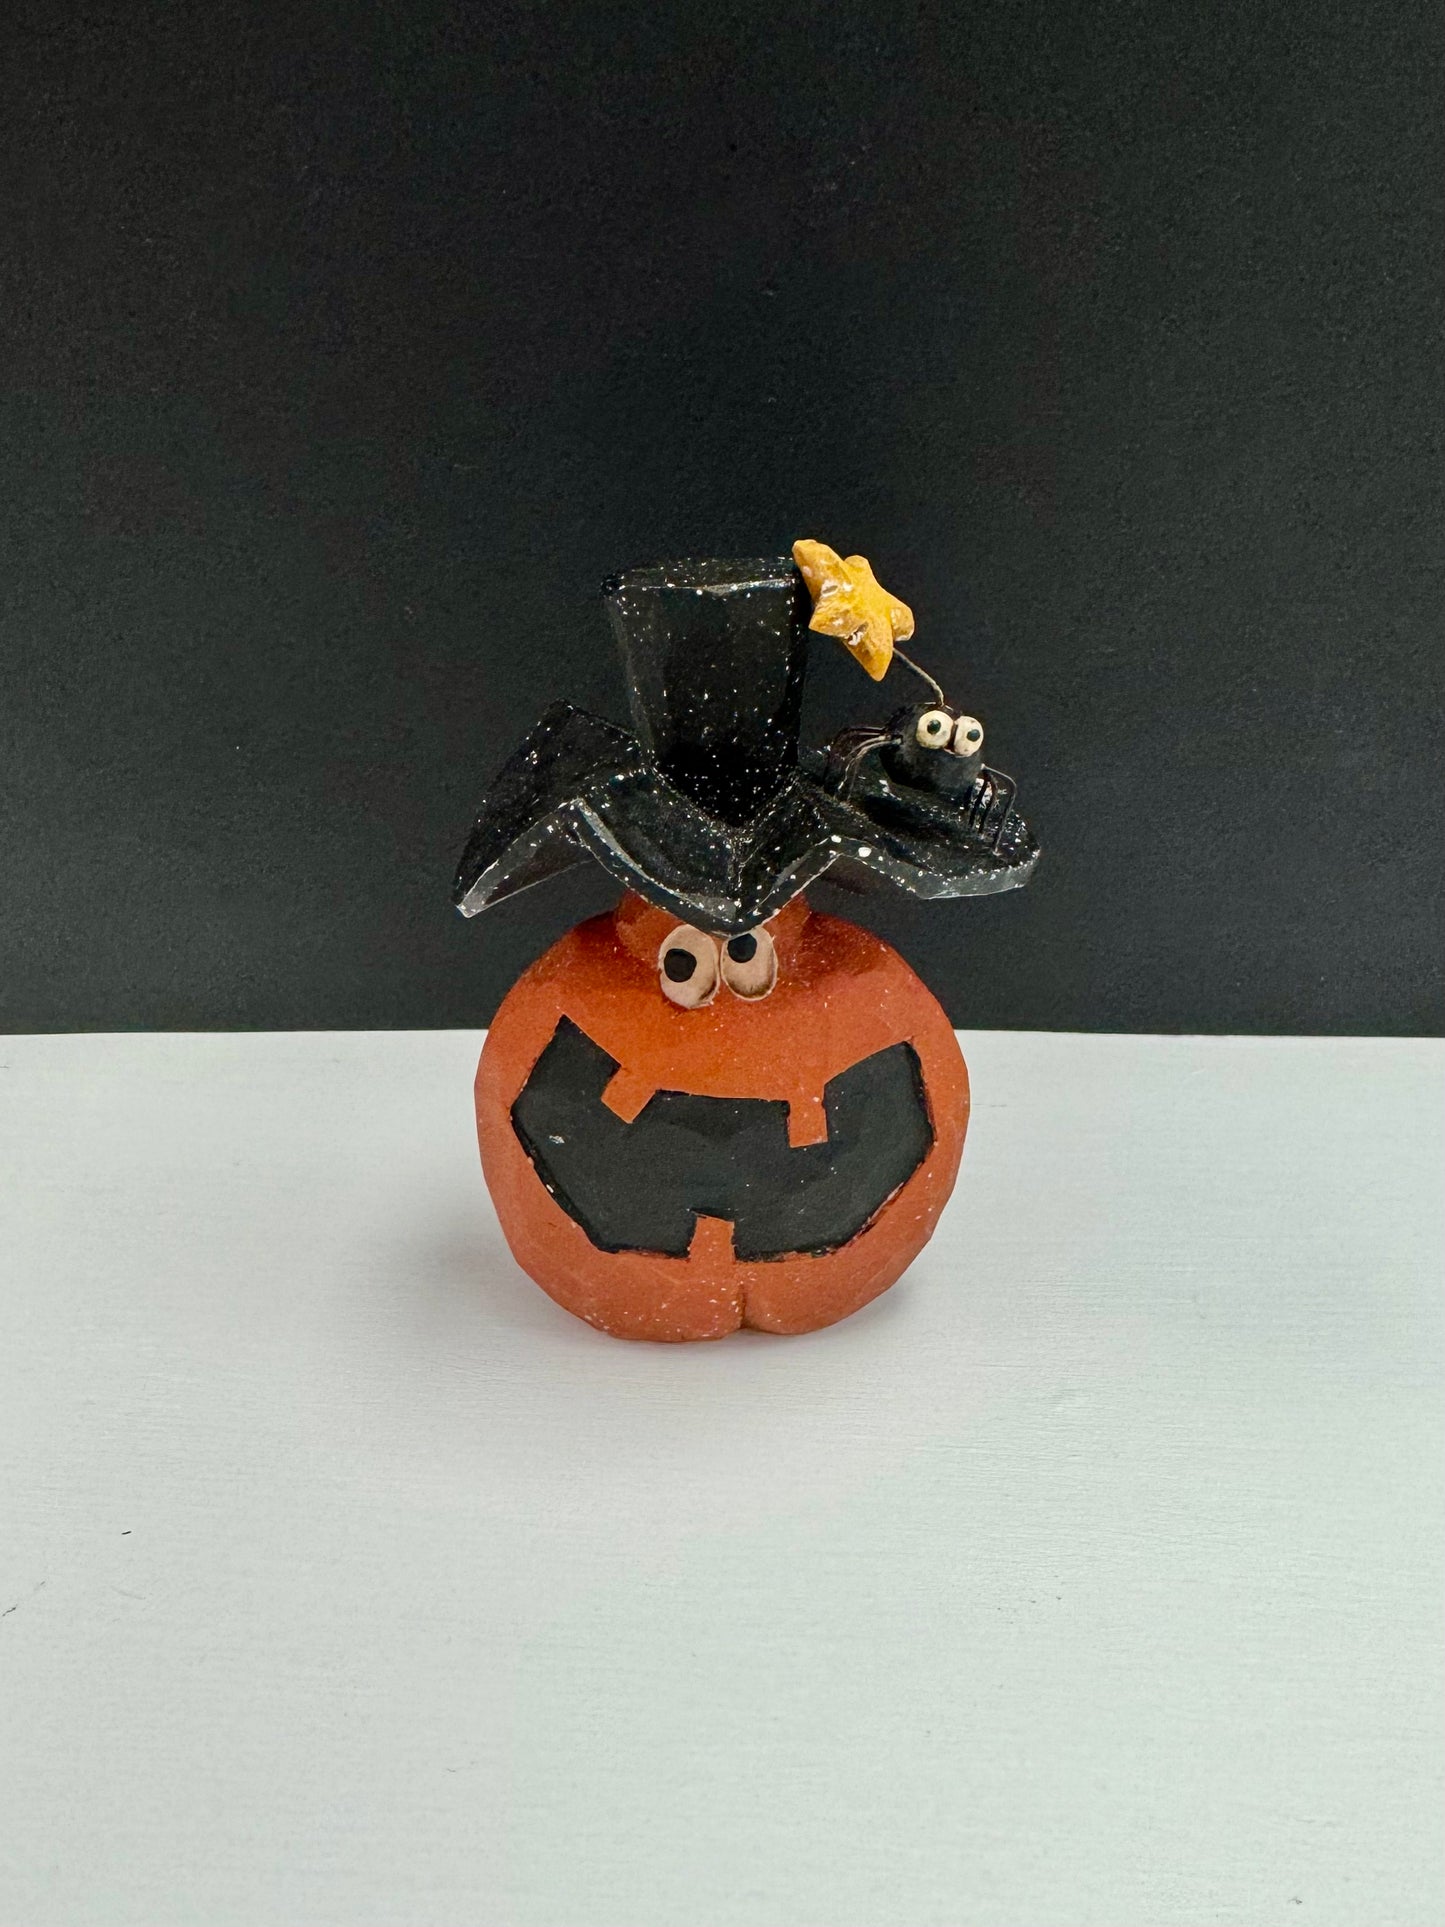 Smiling Pumpkin with Spider Hat Folk Art Figurine